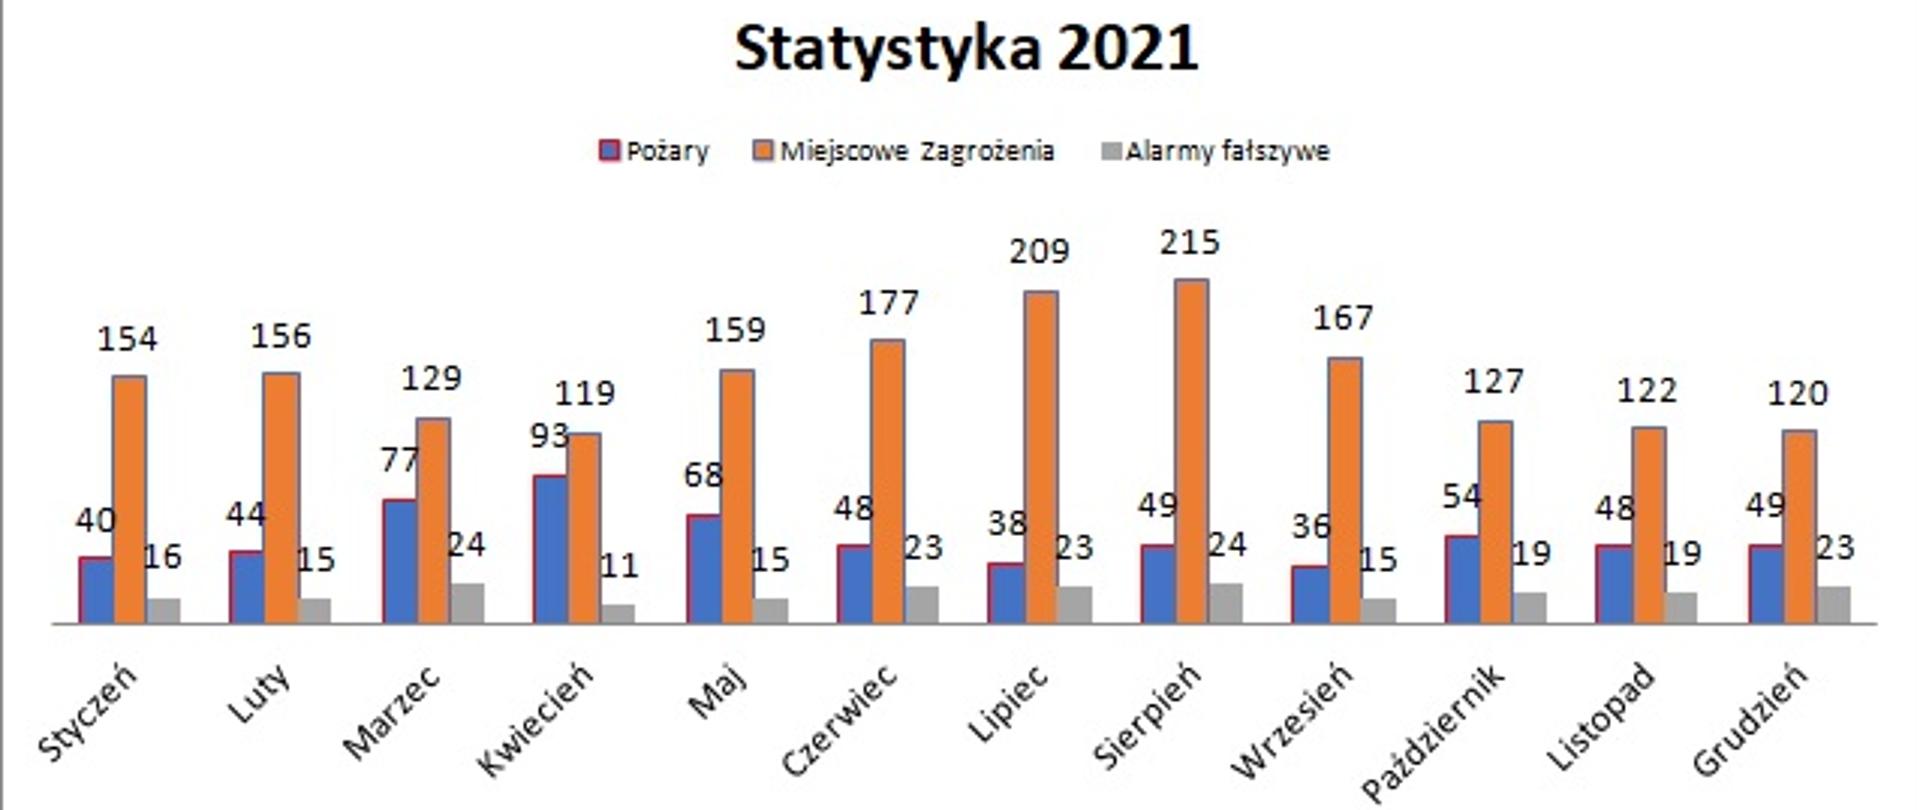 Statystyka za 2021